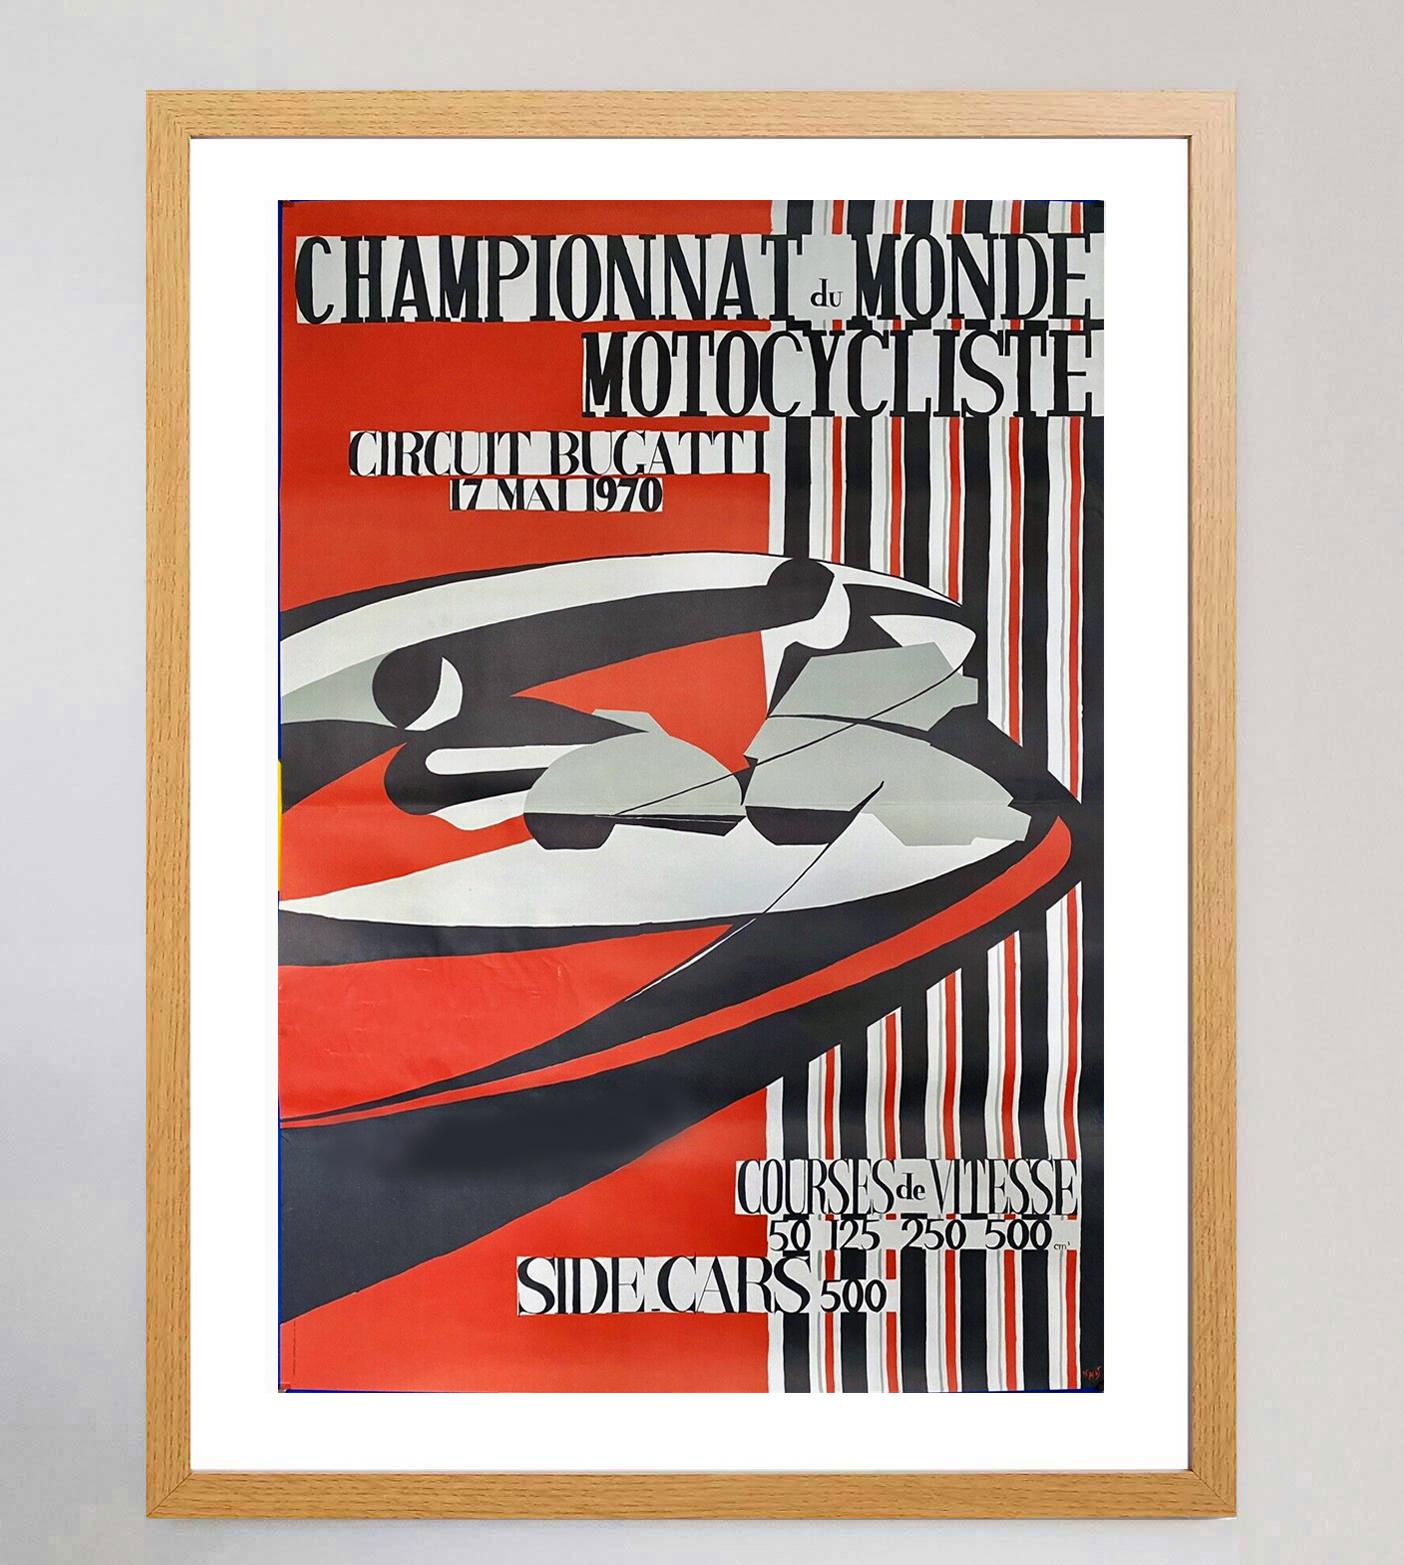 1970 Championnat de Monde Motocycliste Circuit Bugatti Original Vintage Poster In Good Condition For Sale In Winchester, GB